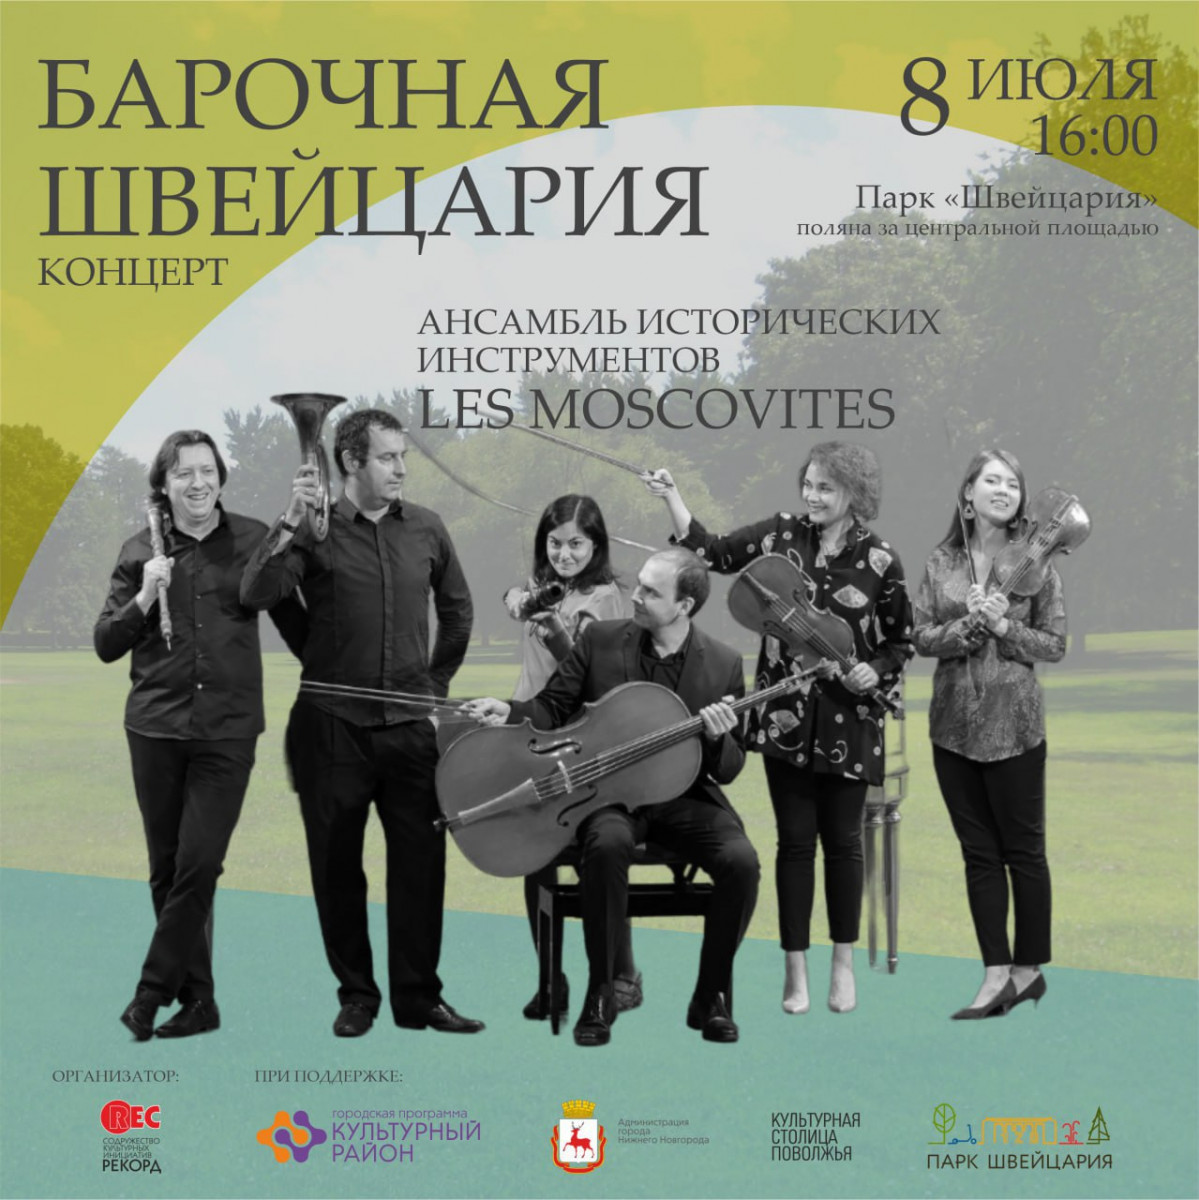 Концерт старинной музыки «Барочная Швейцария» пройдет 8 июля в Нижнем Новгороде